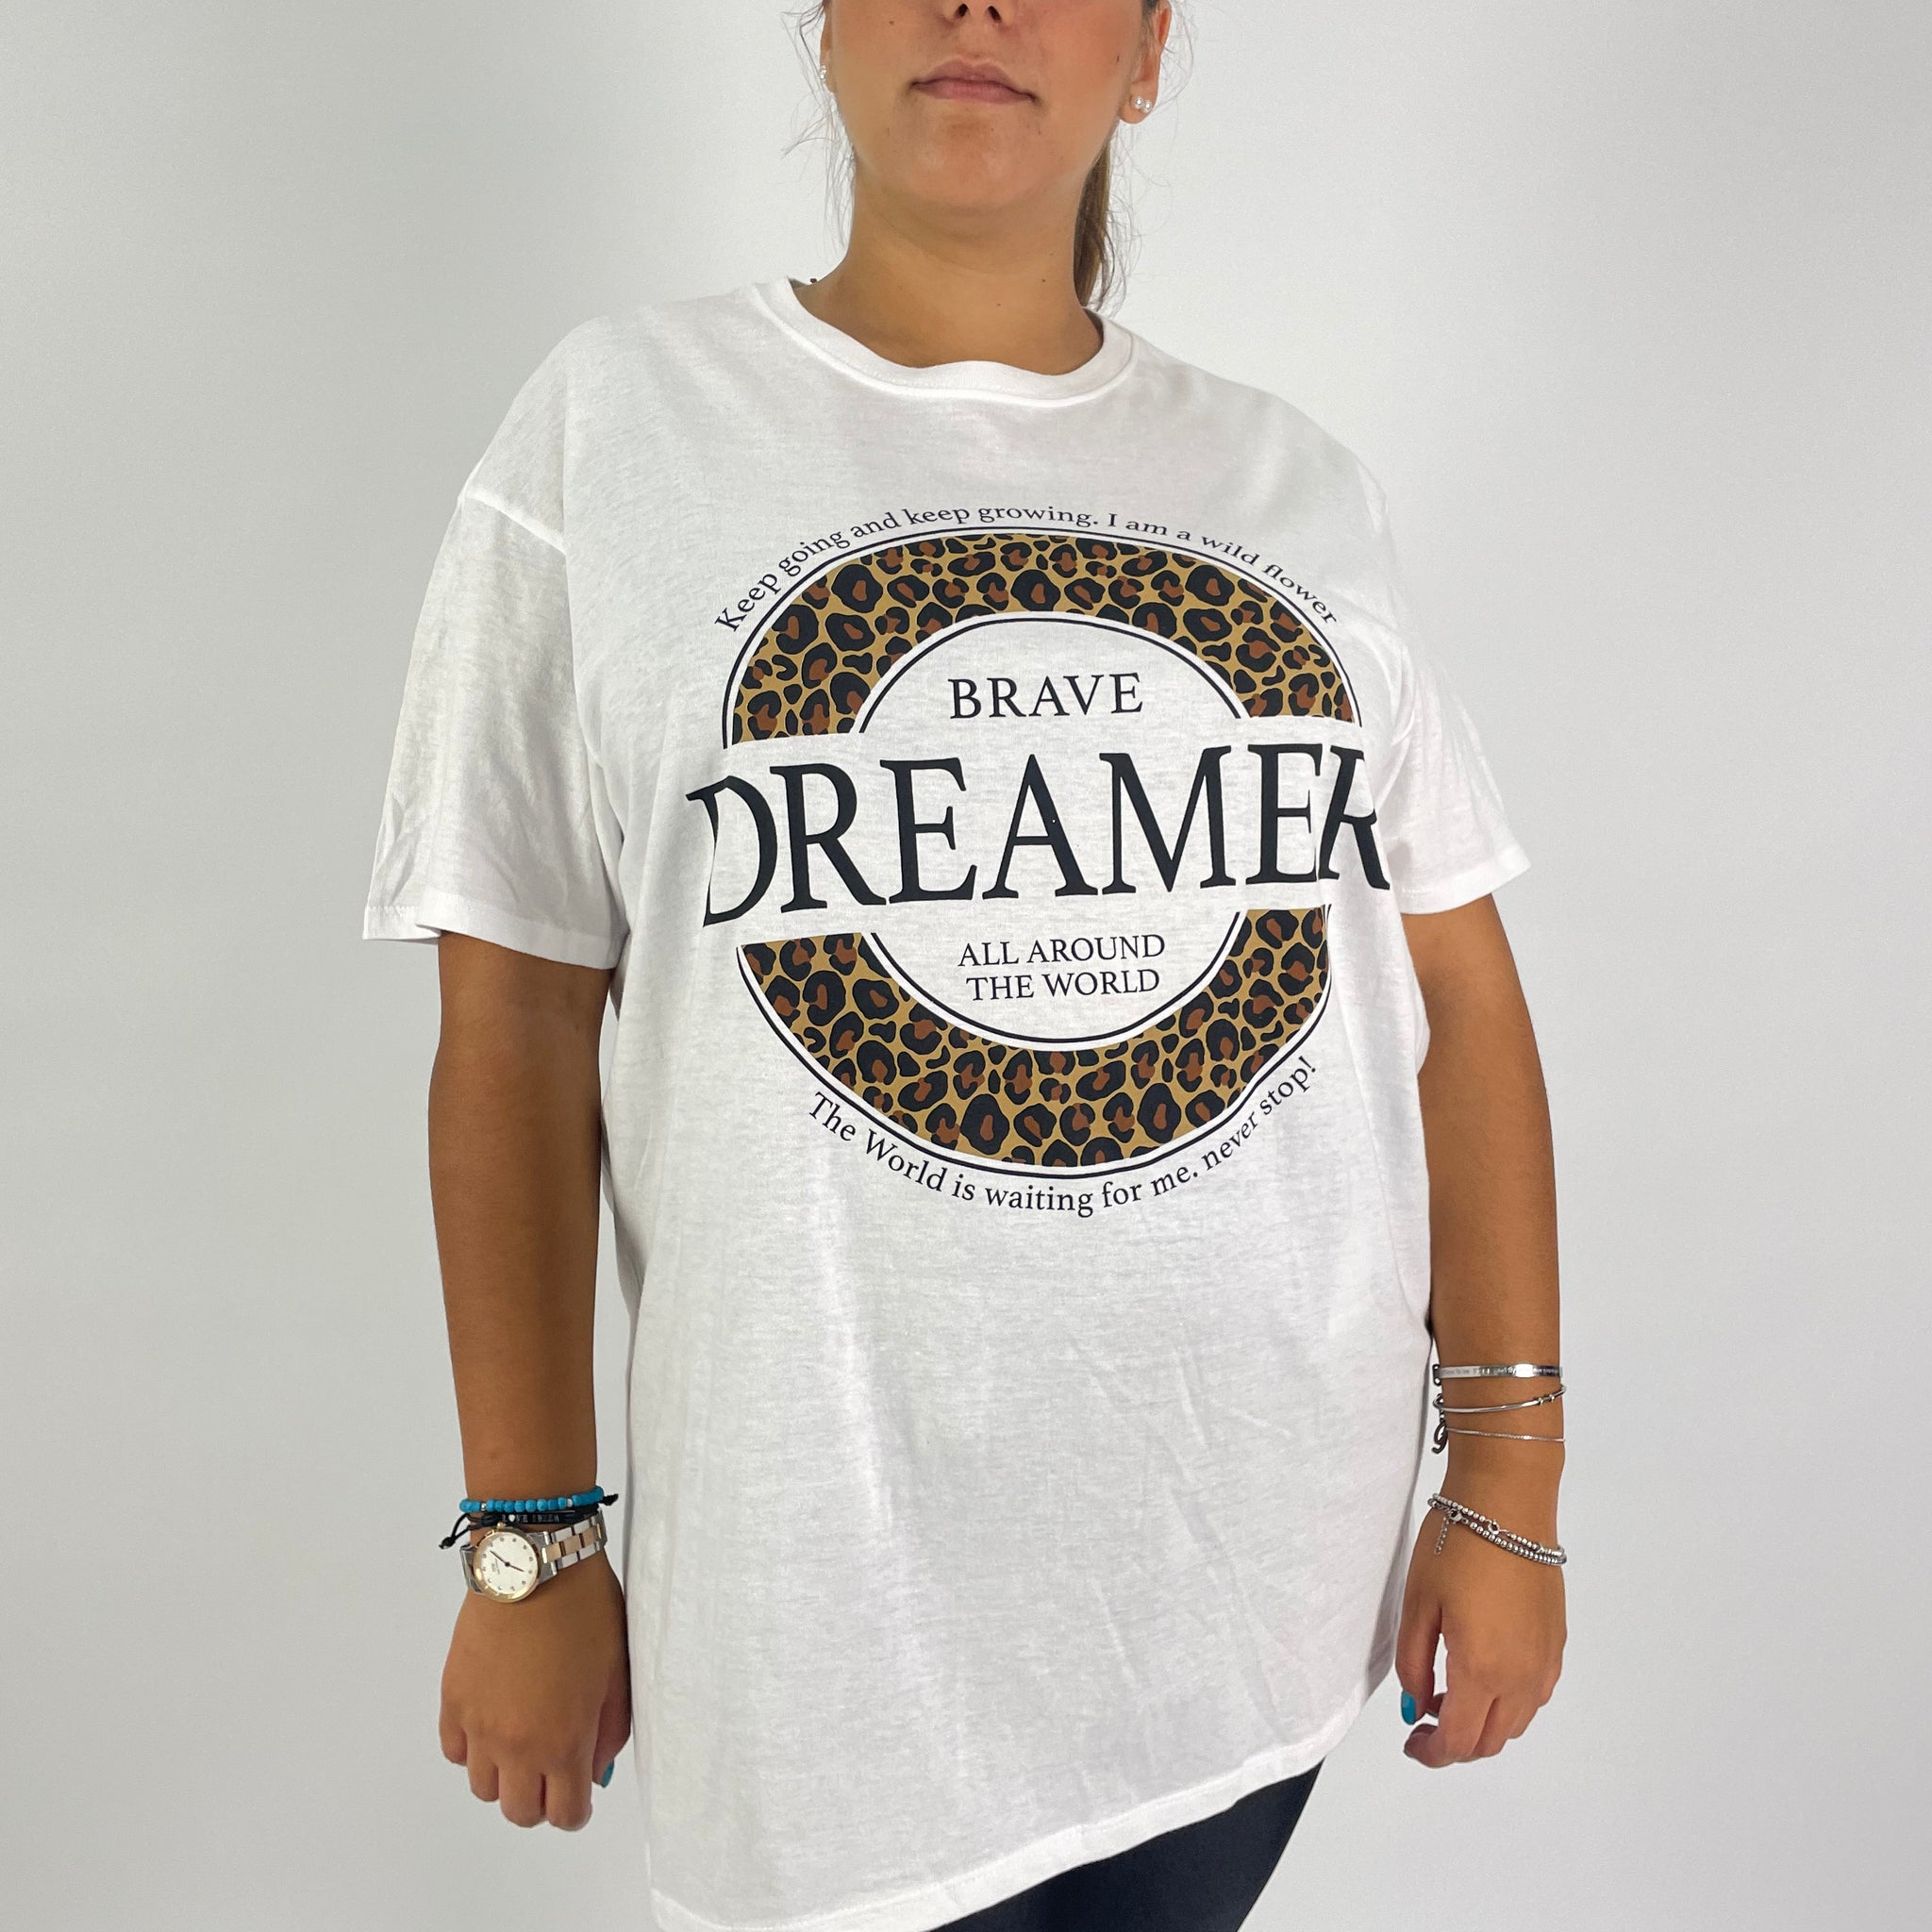 T shirt Over Dreamer